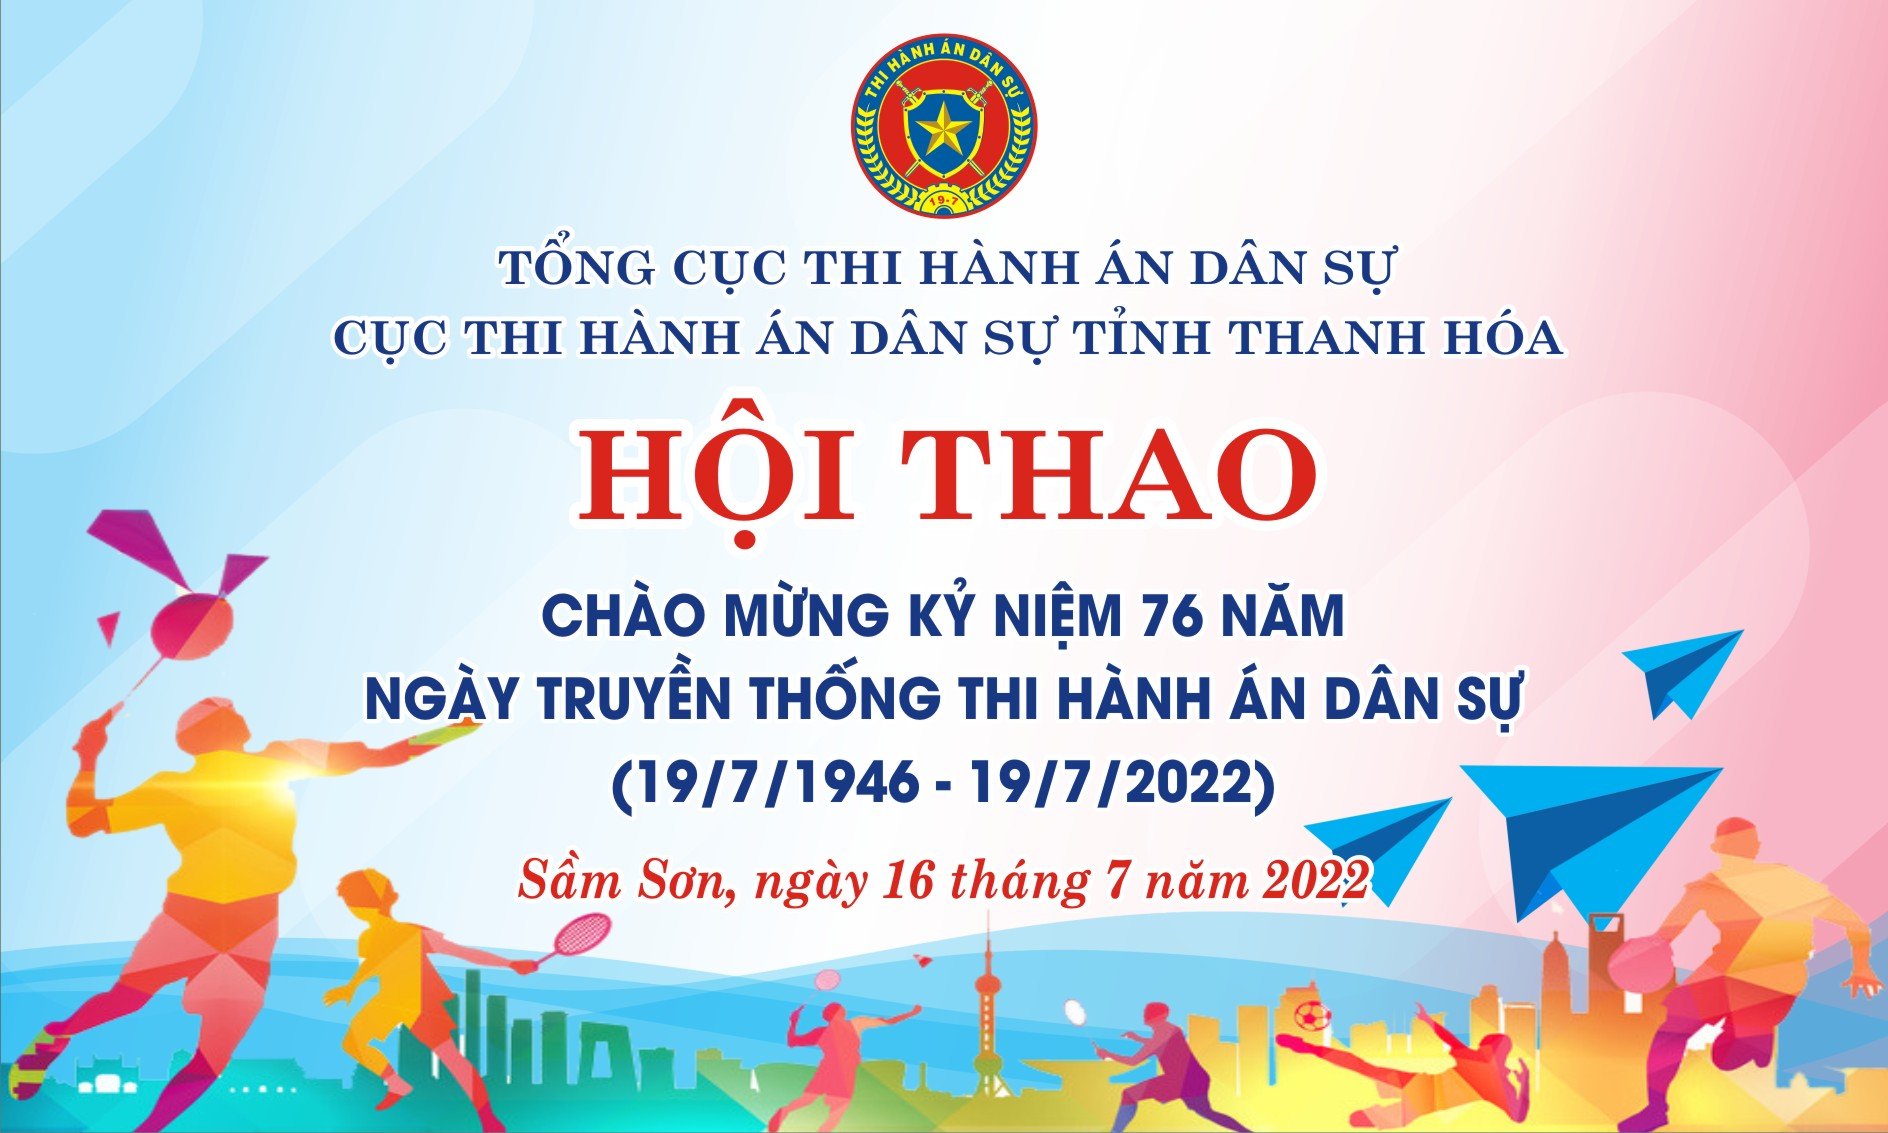 Cục THADS tỉnh tổ chức Hội thao chào mừng kỷ niệm 76 năm ngày truyền thống Thi hành án dân sự (19/7/1946-19/7/2022)